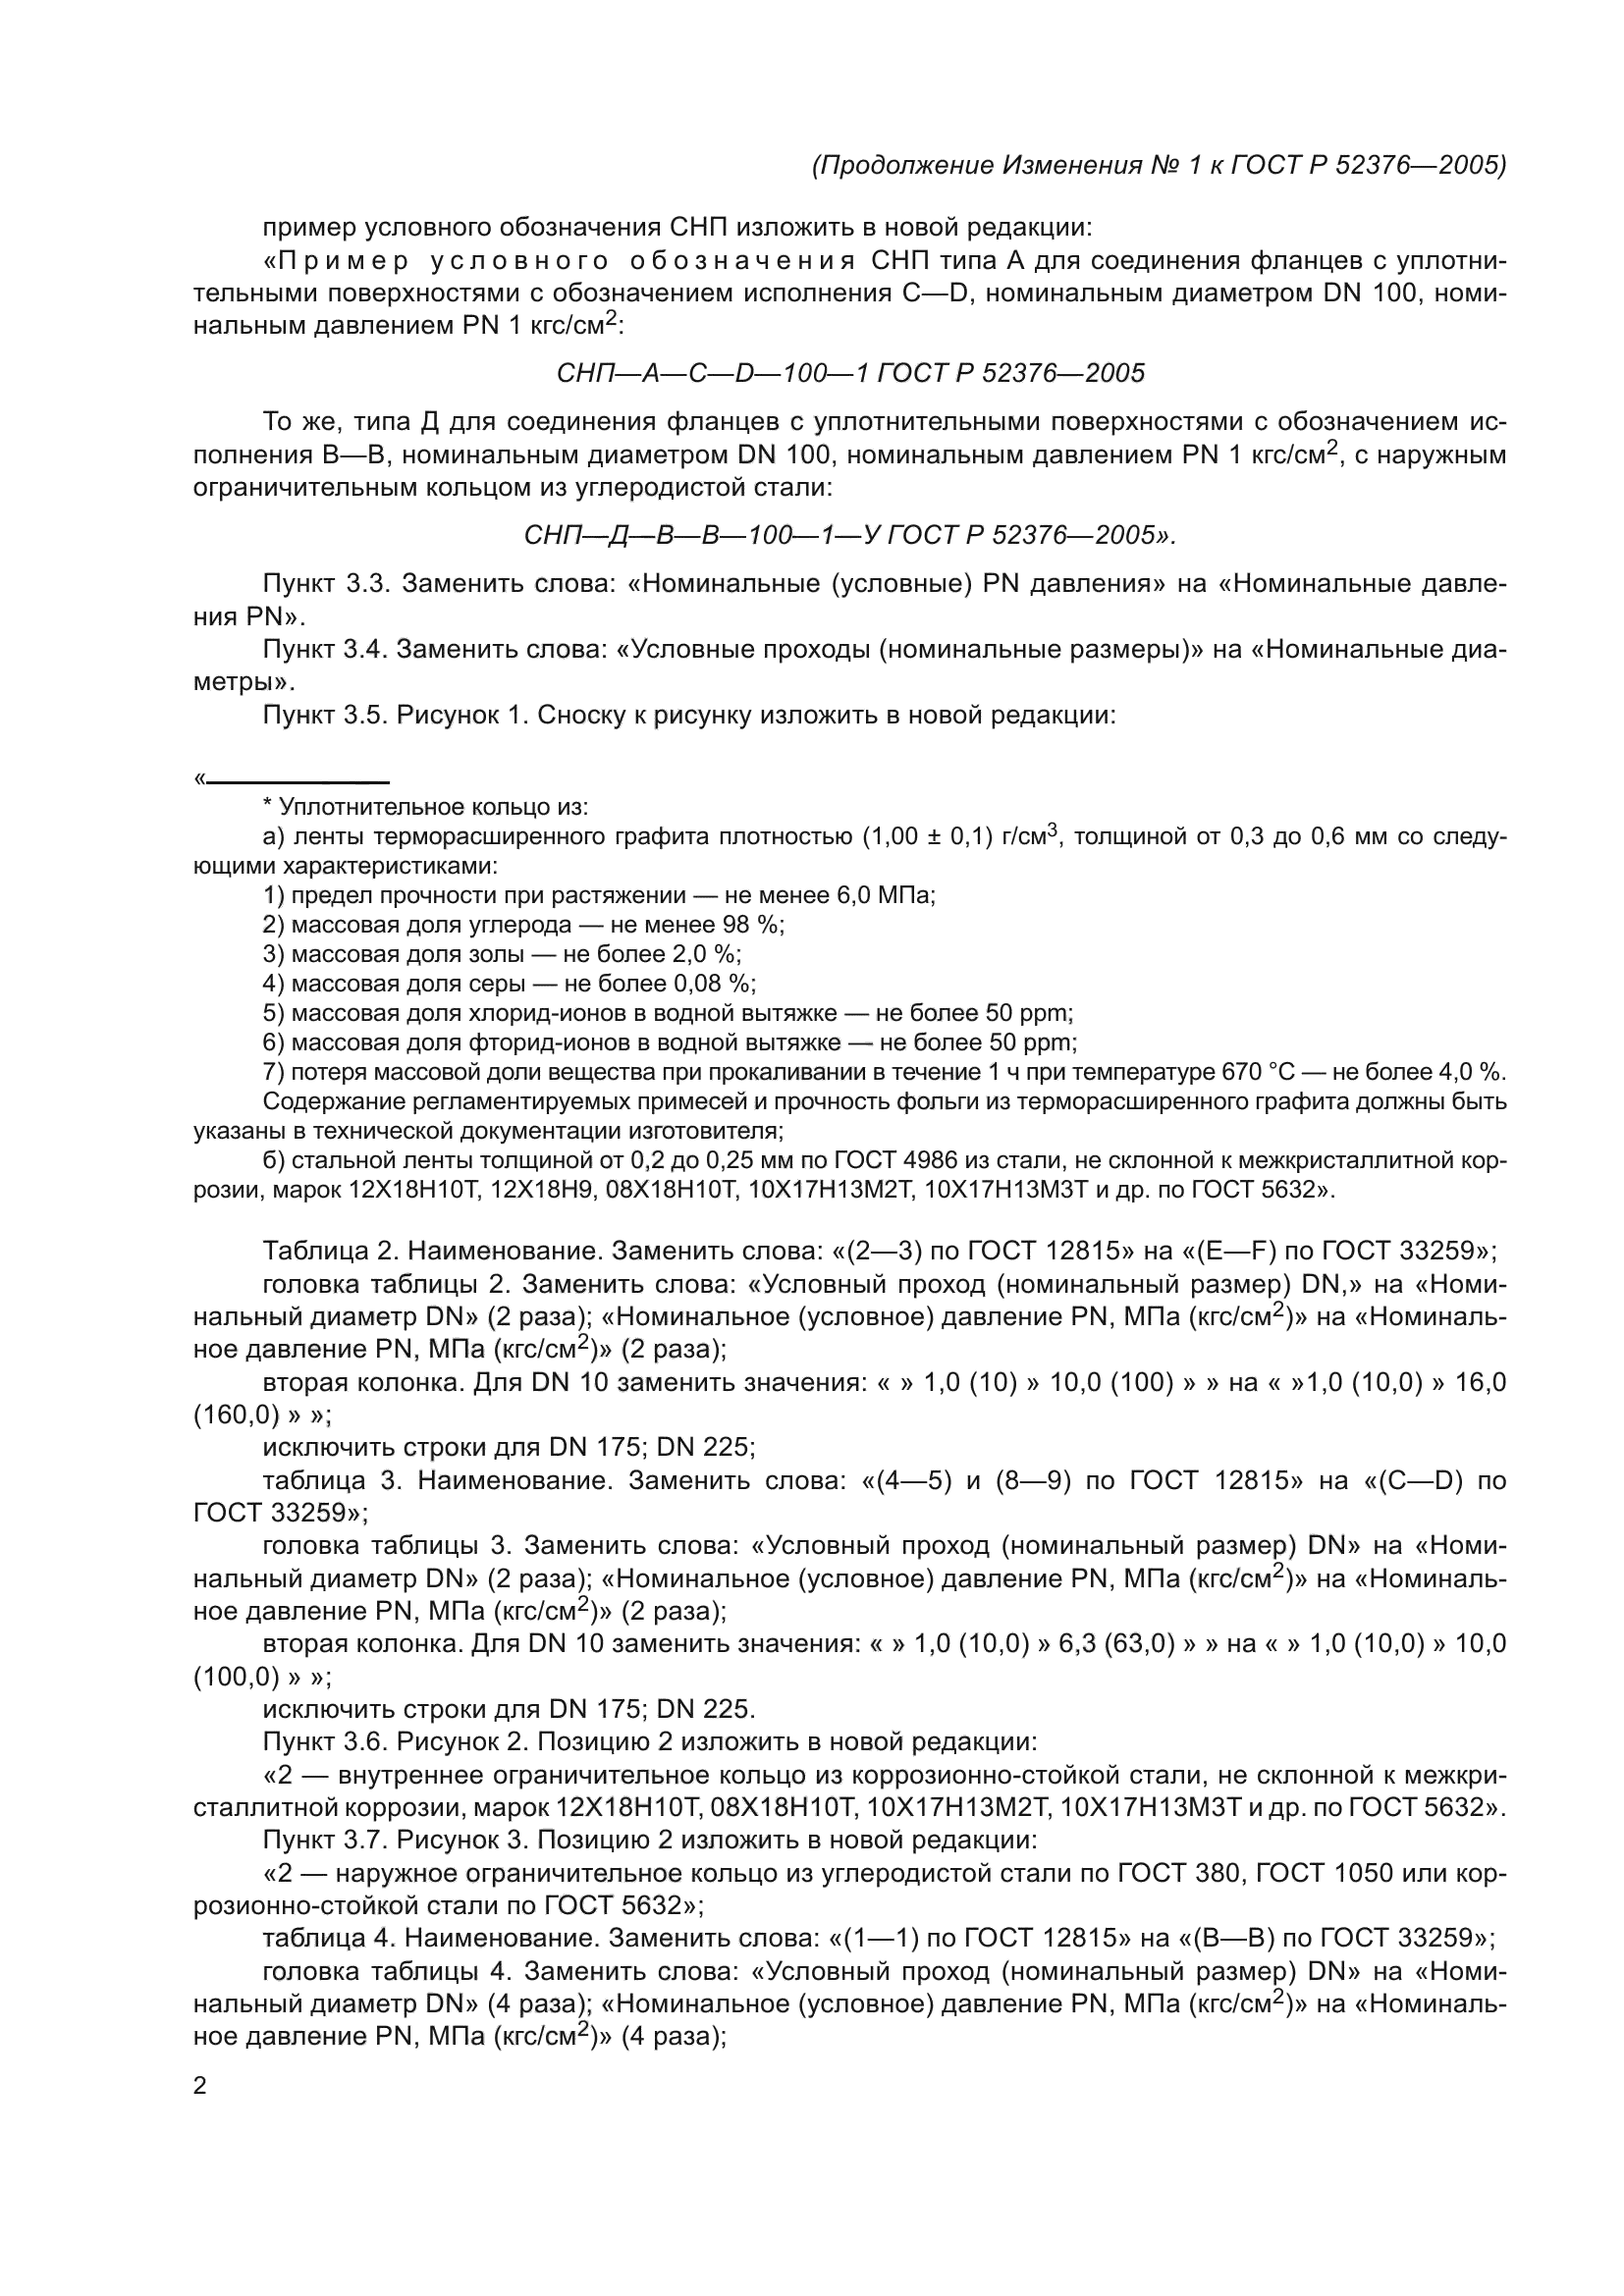 Изменение №1 к ГОСТ Р 52376-2005